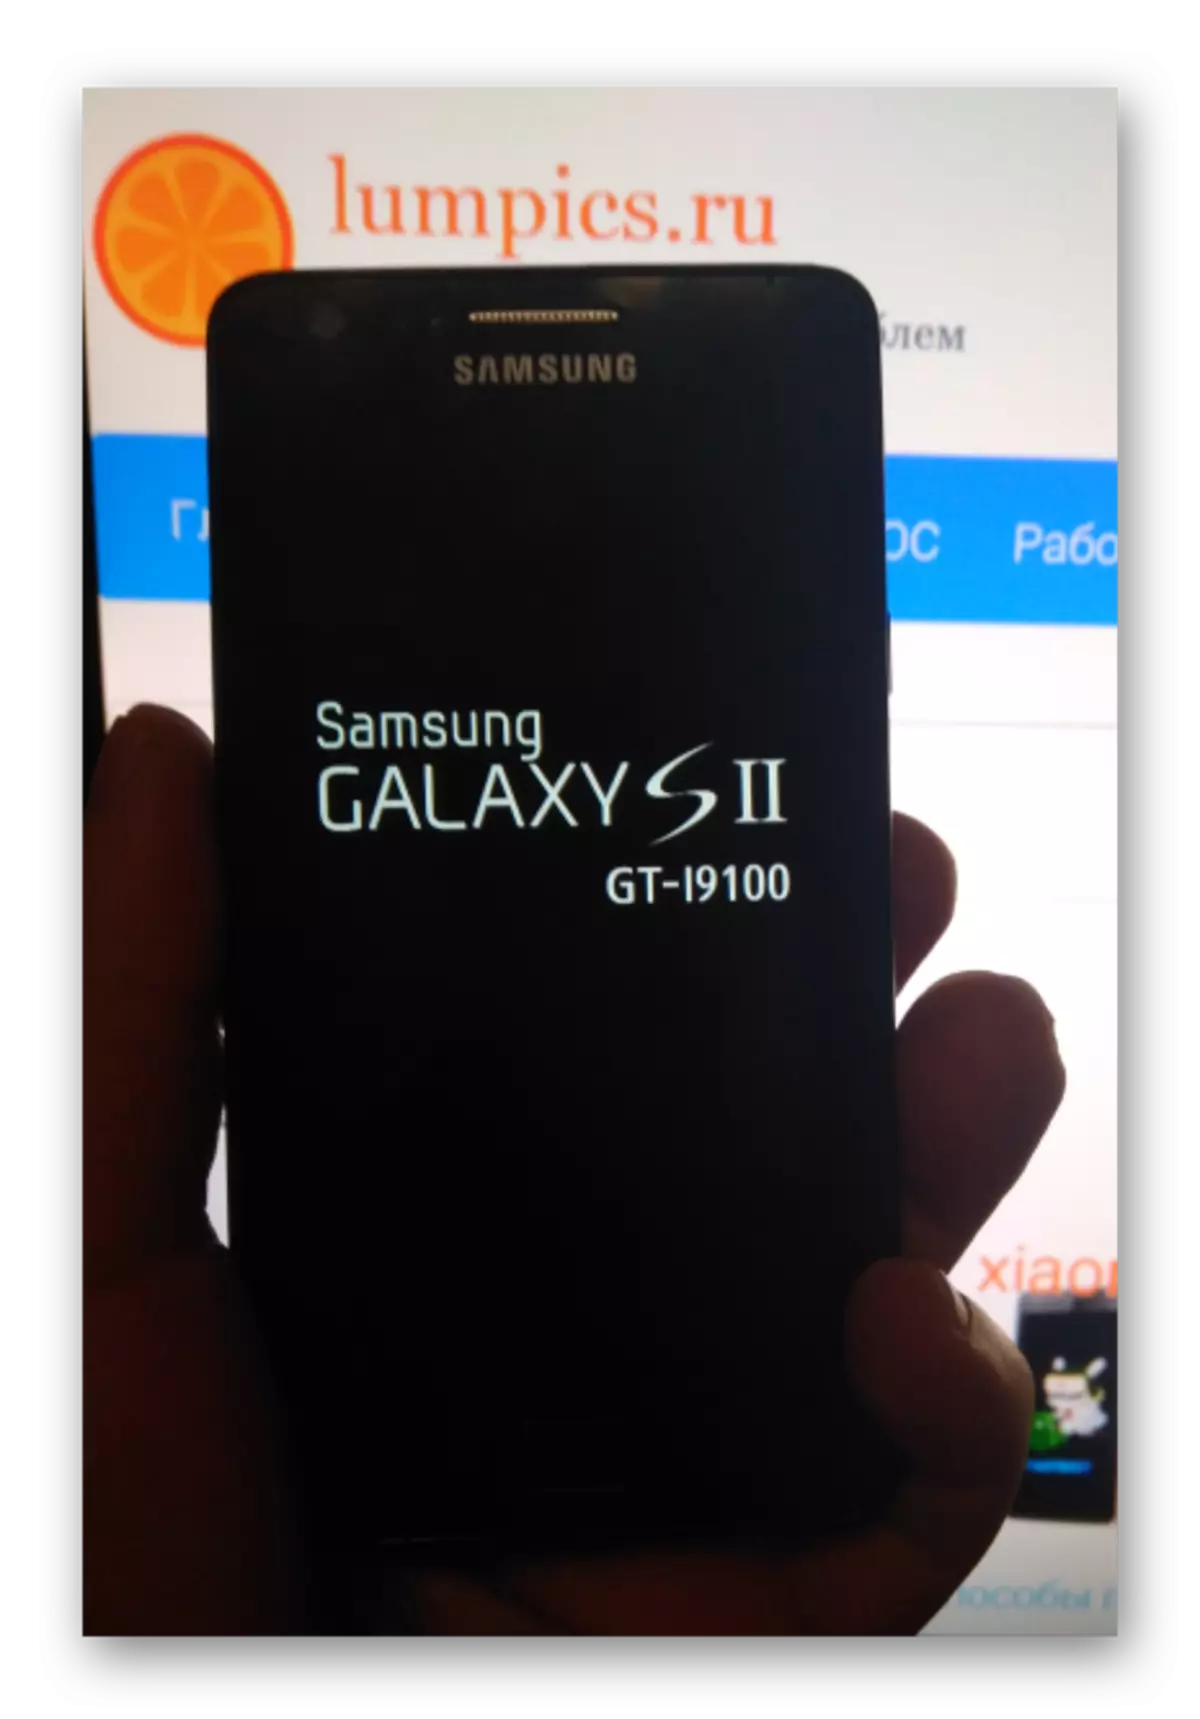 Samsung Galaxy S 2 GT-I9100 baterya singilin bago i-reset at mag-upgrade